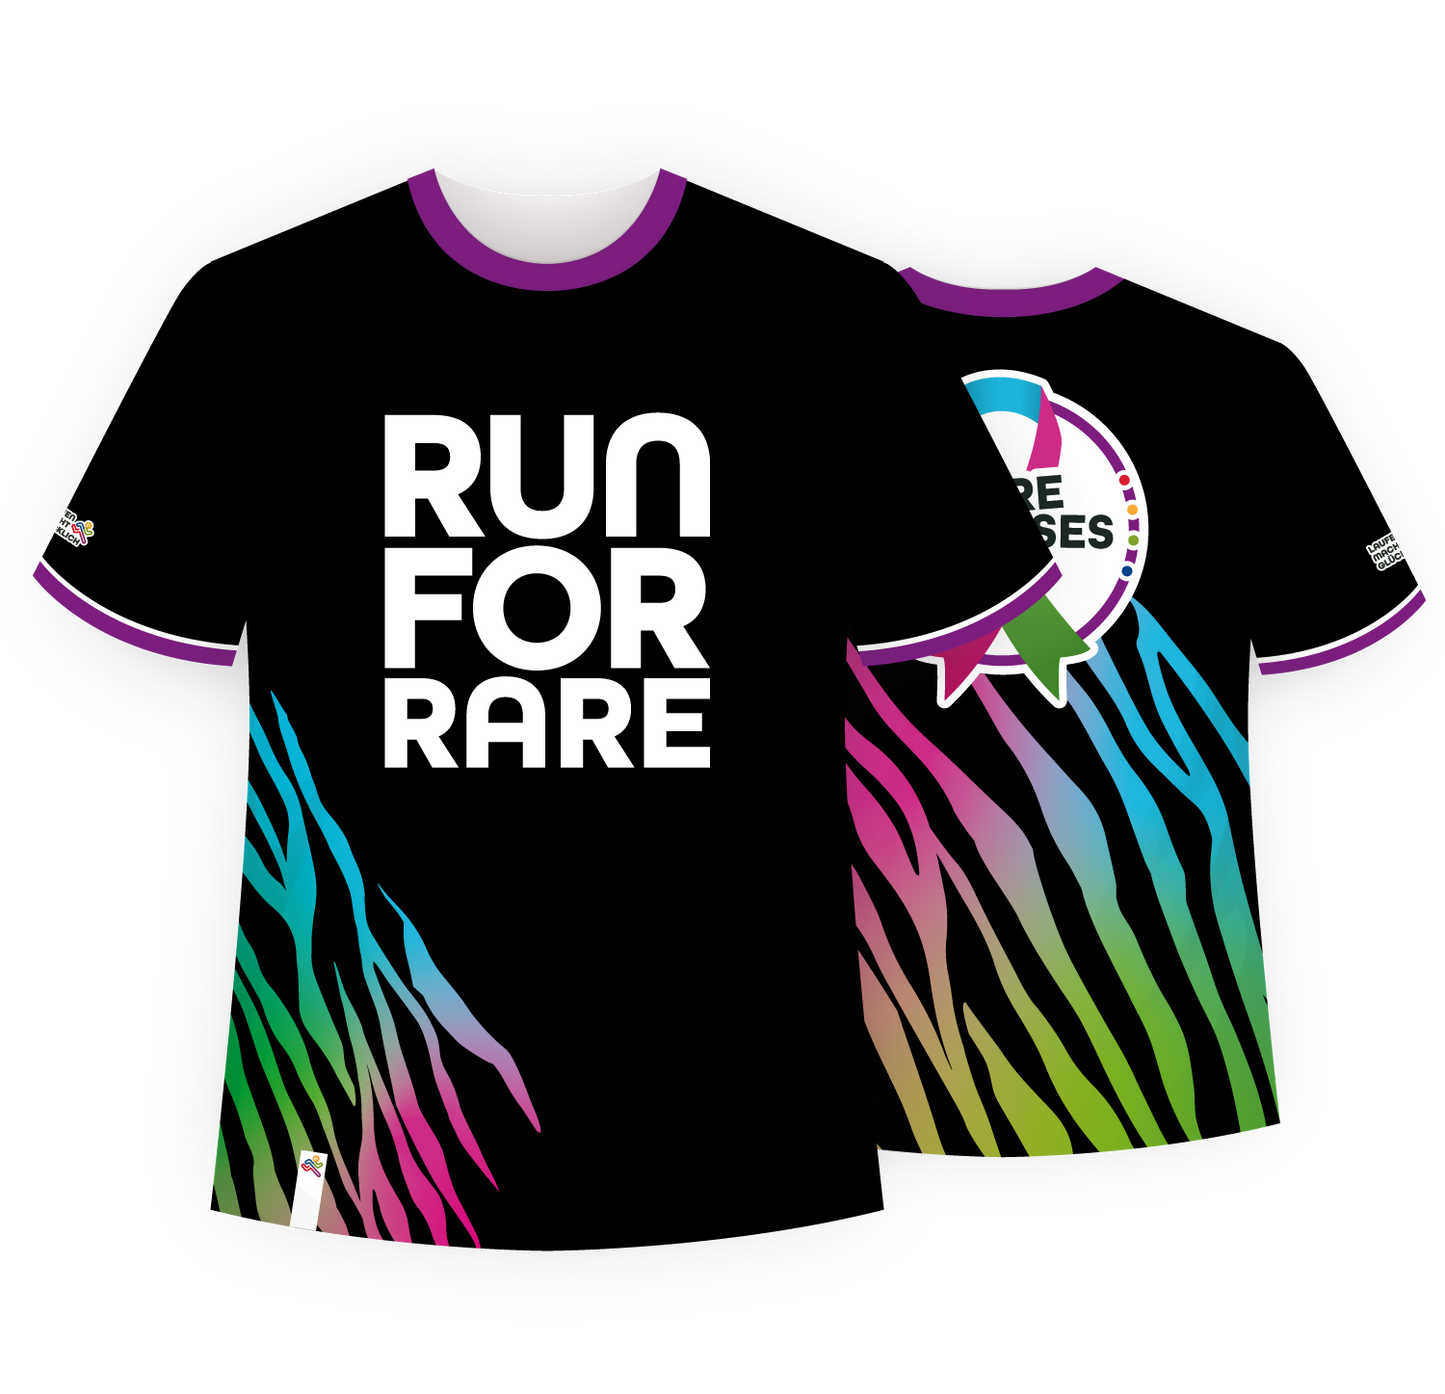 Shirt "Rare Diseases Run" (2024)